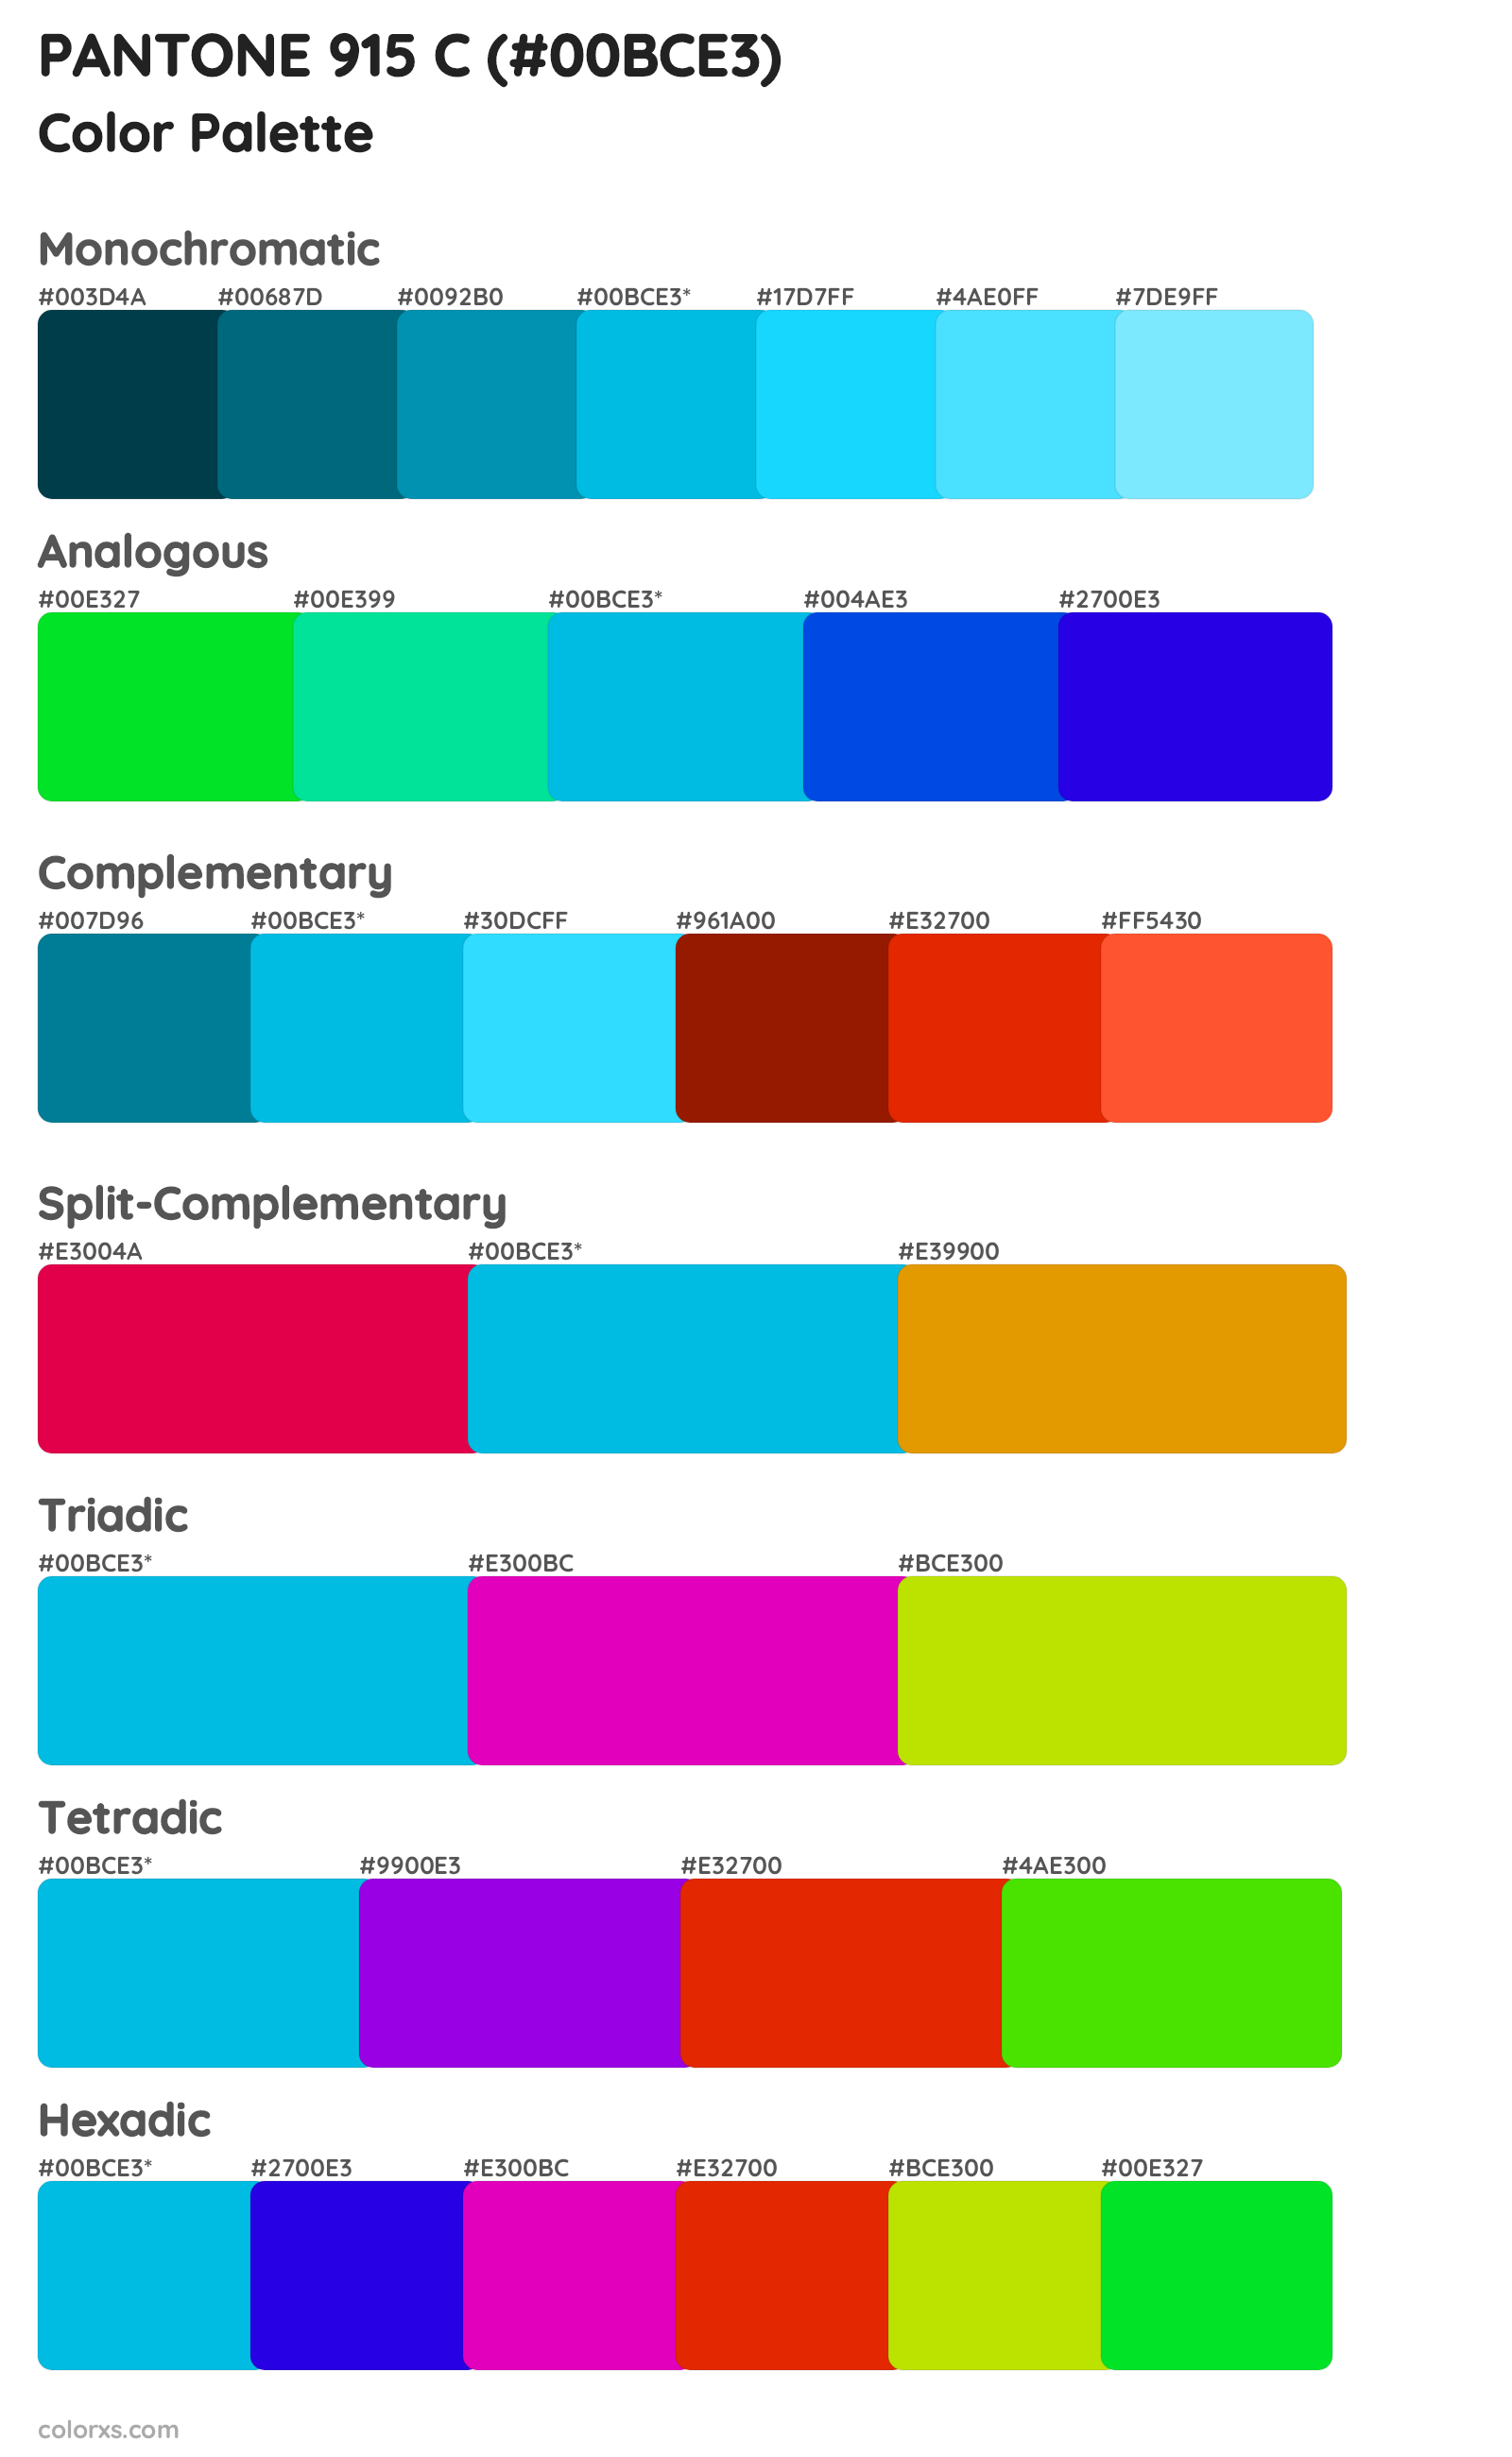 PANTONE 915 C Color Scheme Palettes